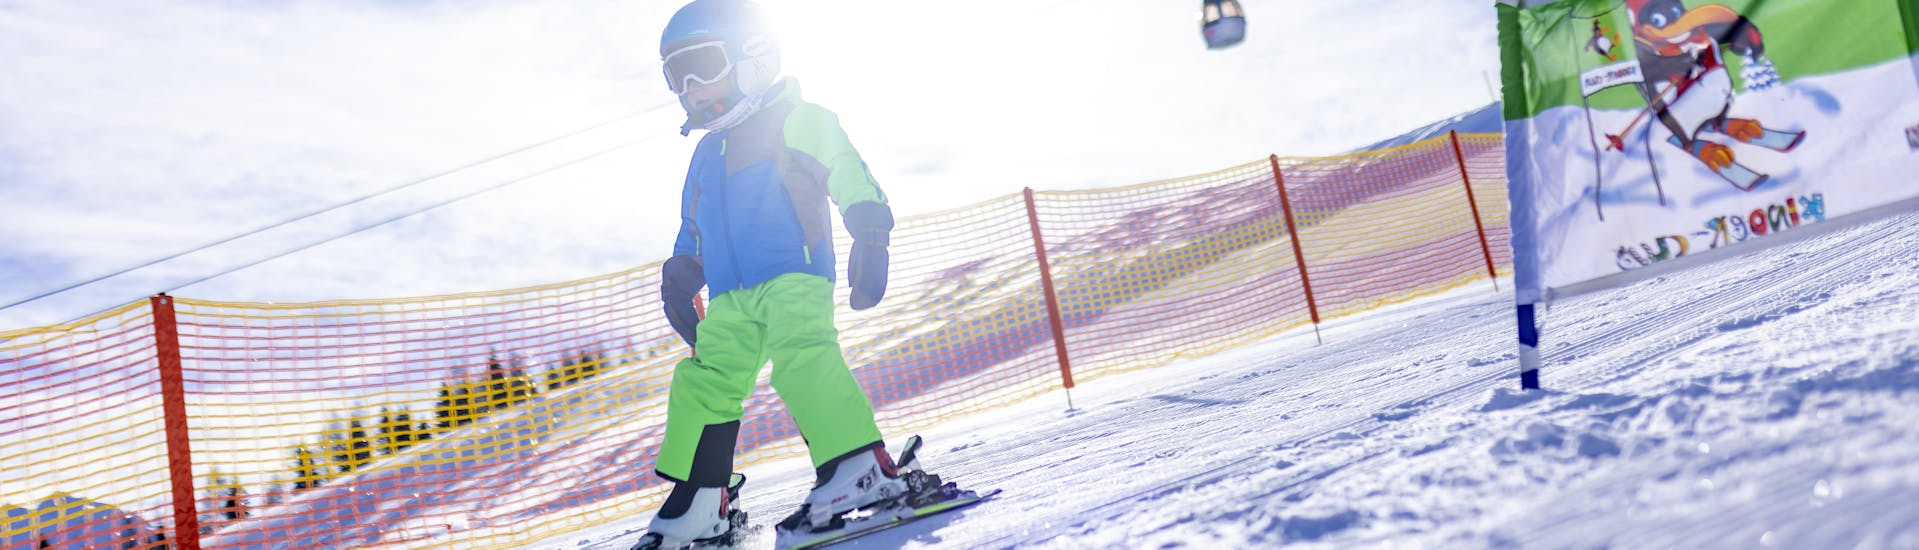 Cours de ski Enfants dès 4 ans - Avancé.